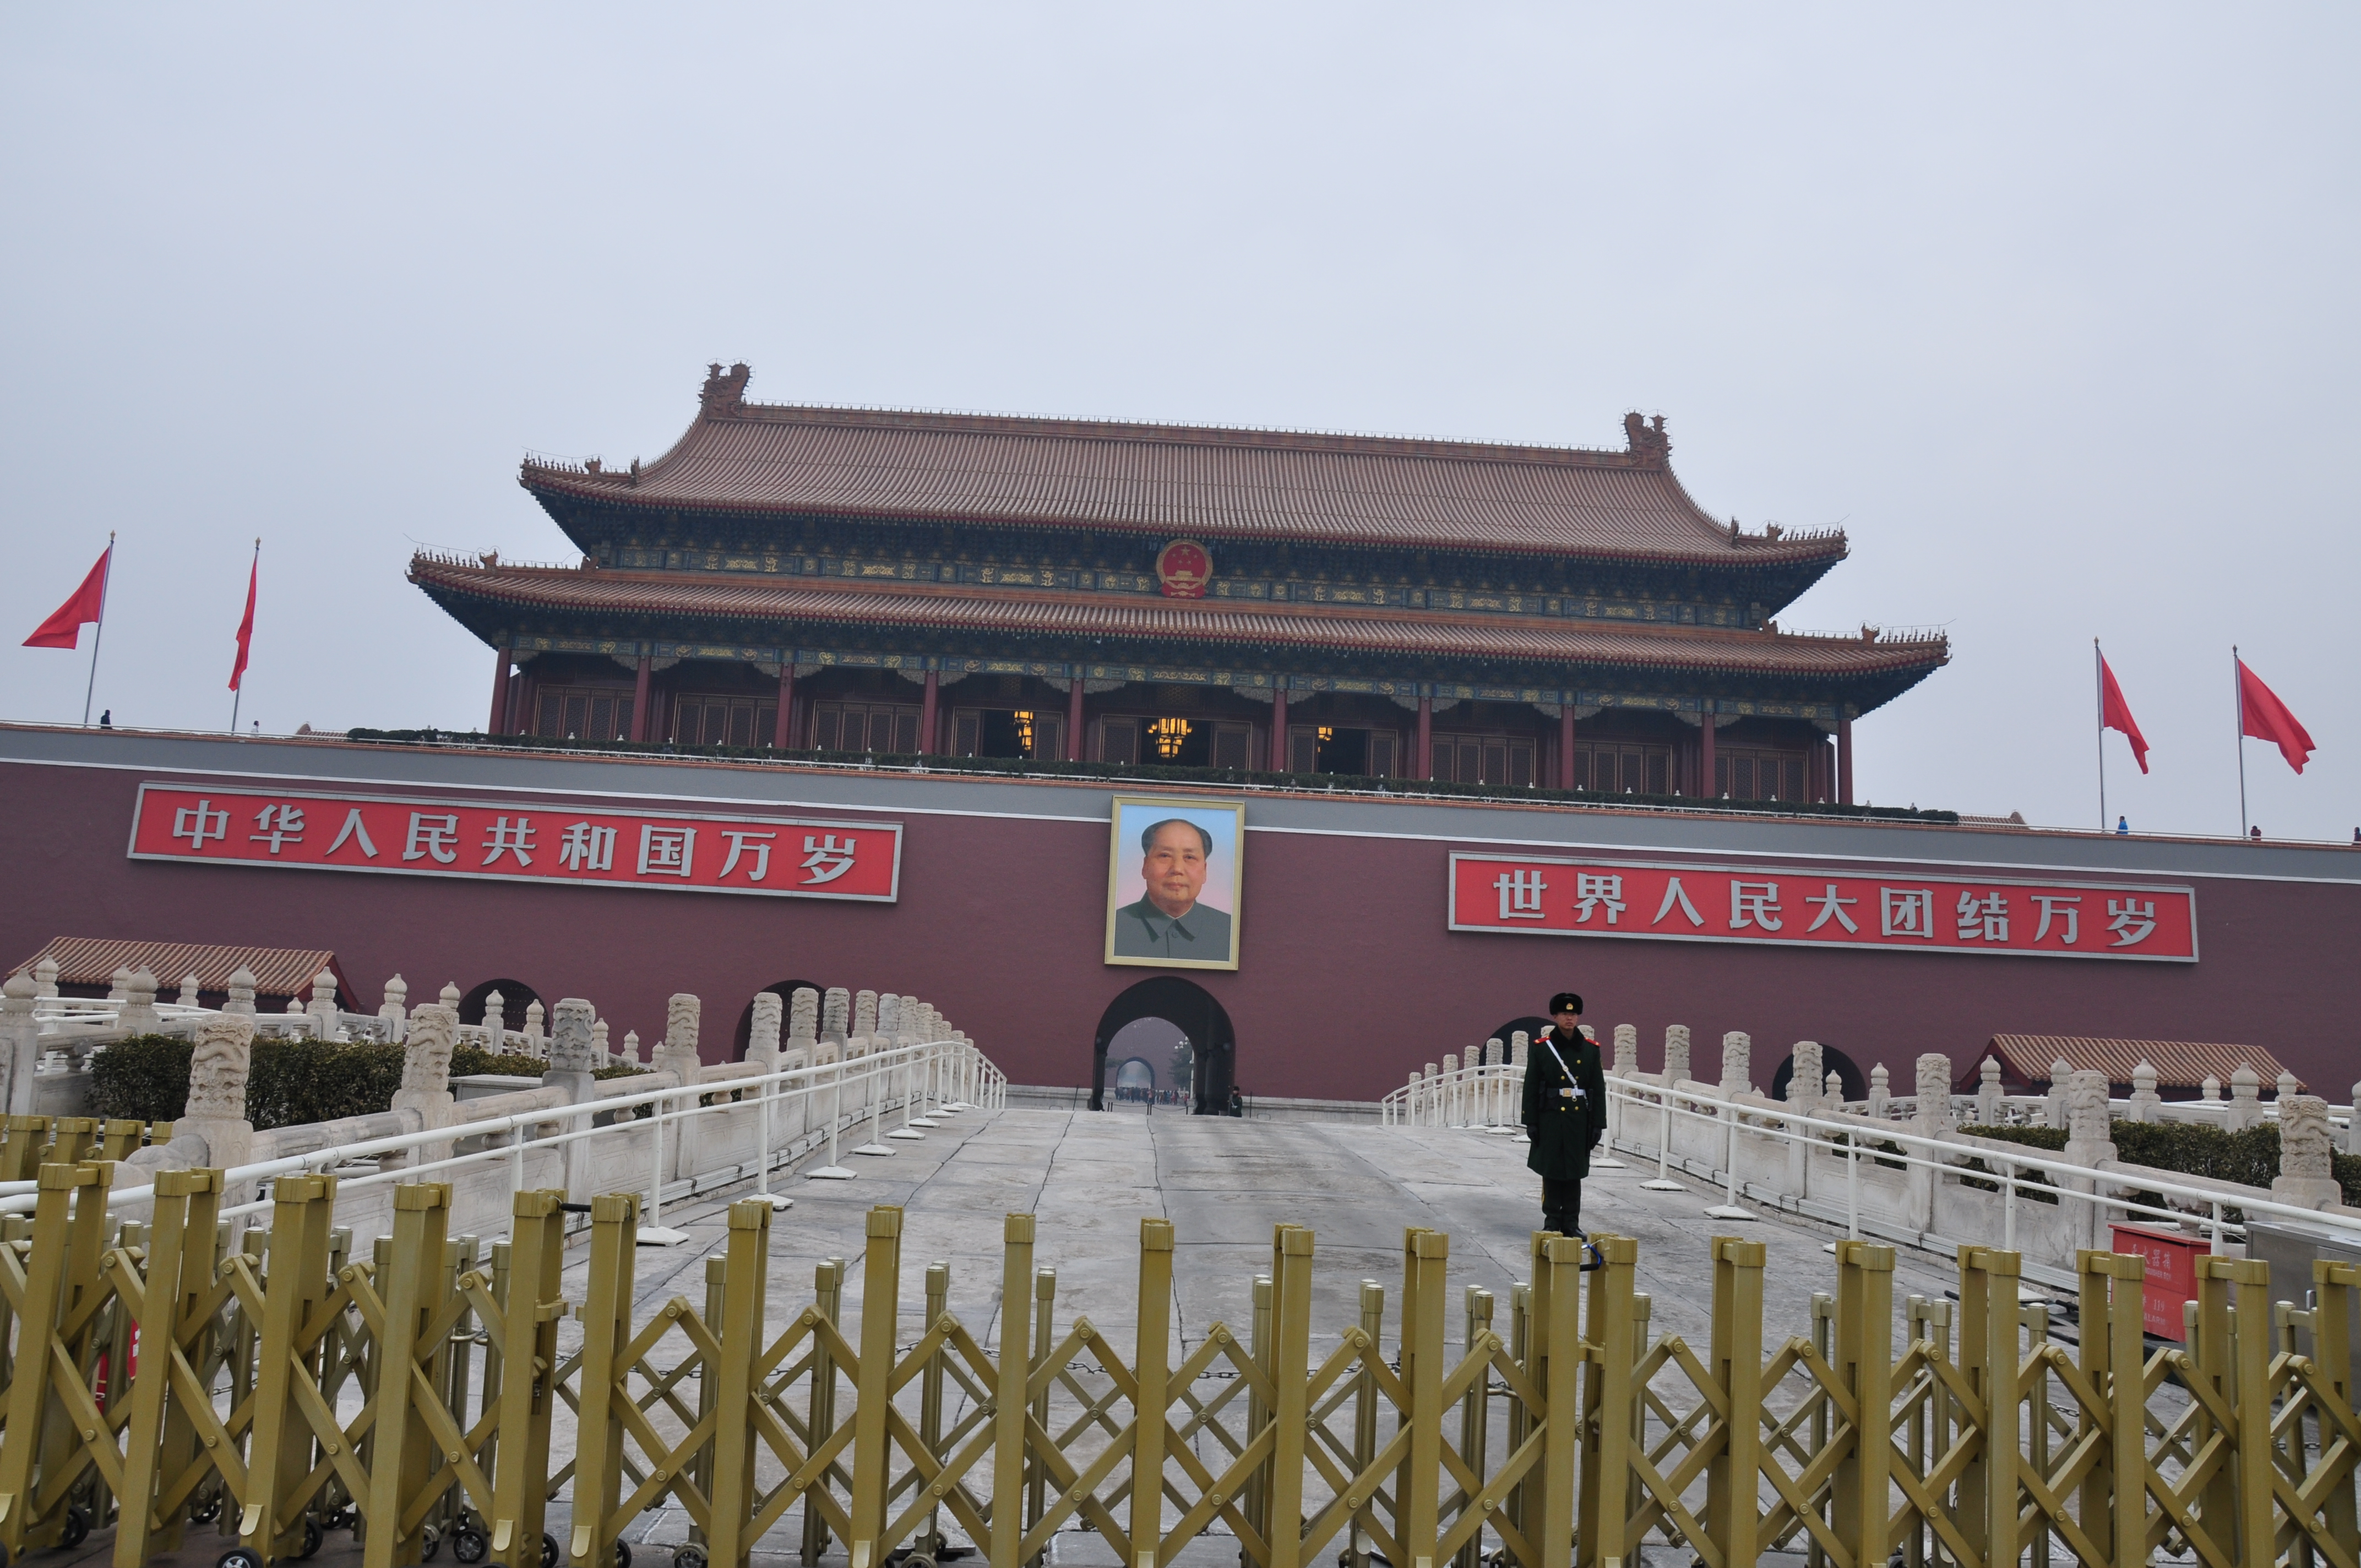 【携程攻略】北京天安门城楼景点,天安门城楼位于天安门广场北端，是中国古代最壮丽的城楼,也是新中国…